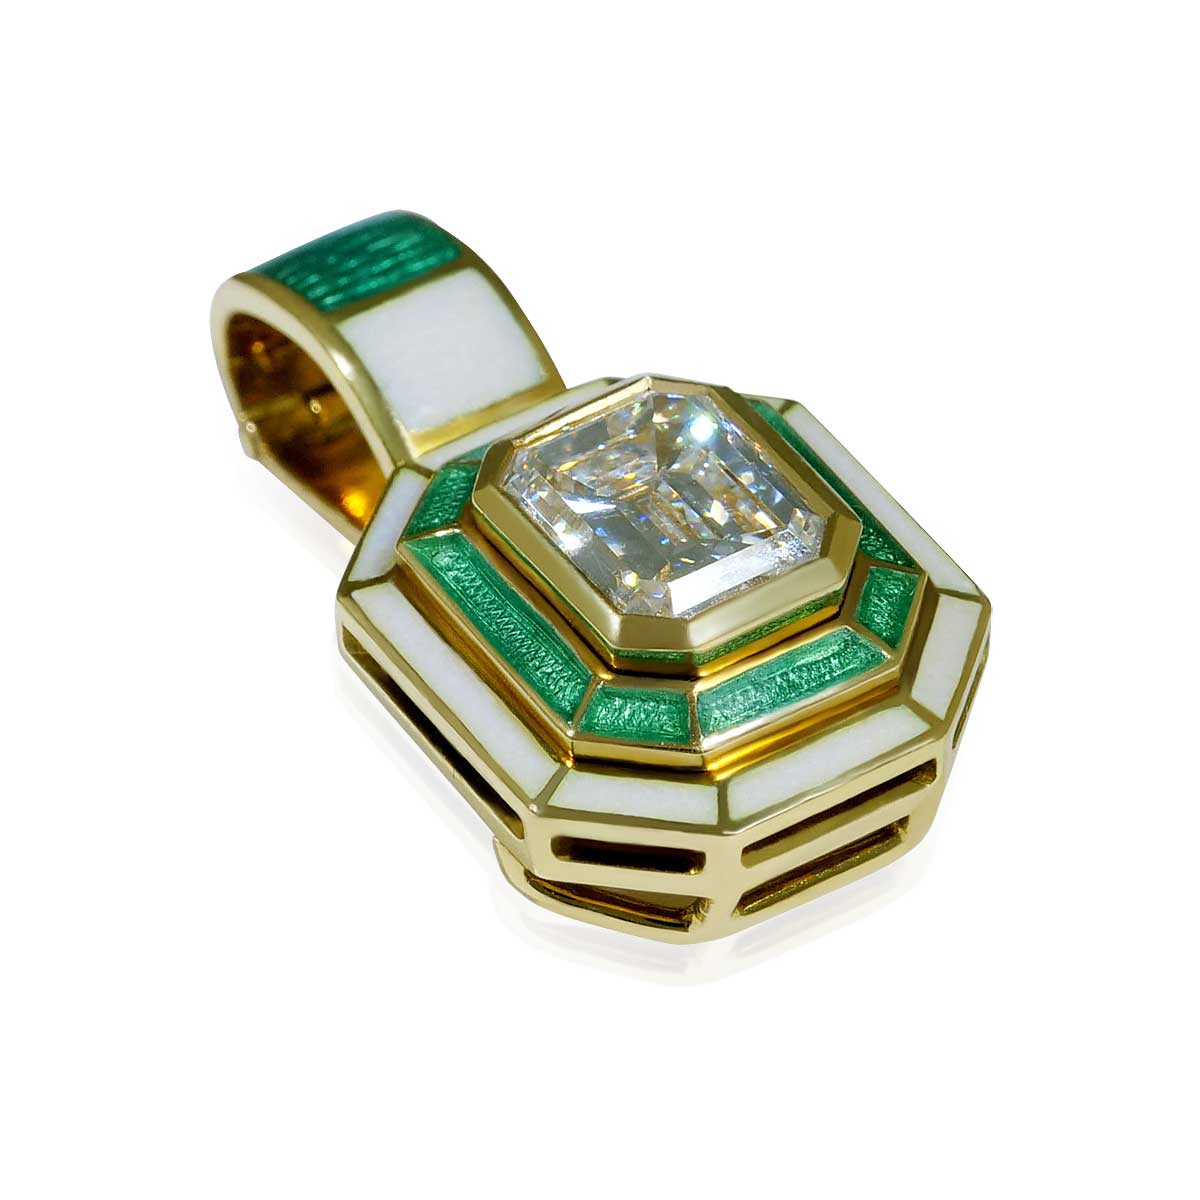 Diamanten im Smaragdschliff ca 2,25 ct mit Smaragdkugelkette  + Goldenen Emailschmuckornamenten und zweiter Gold Anhänger